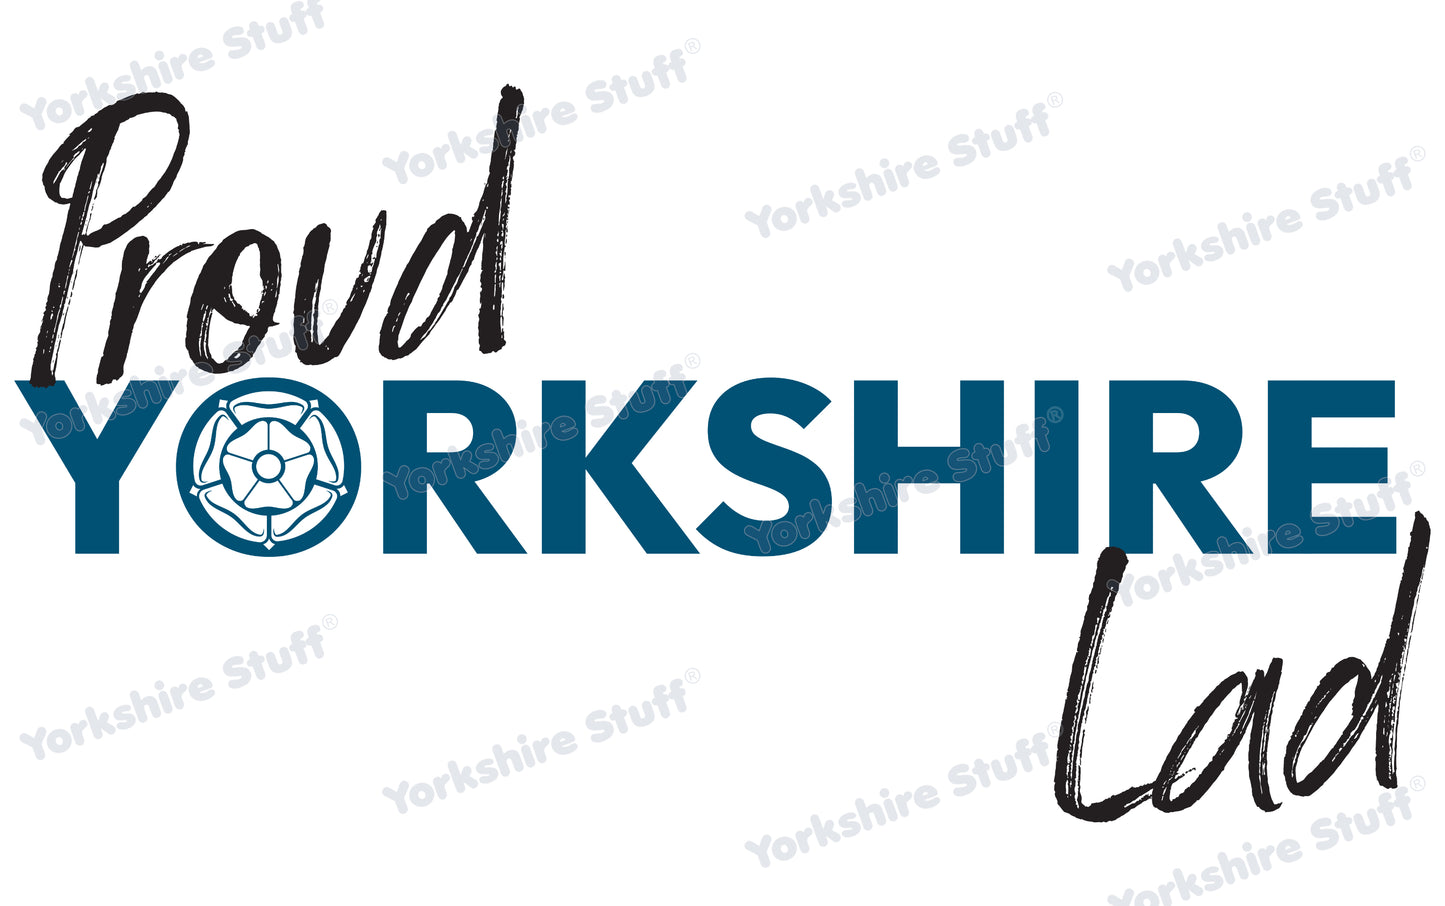 Proud Yorkshire Lad T-Shirt